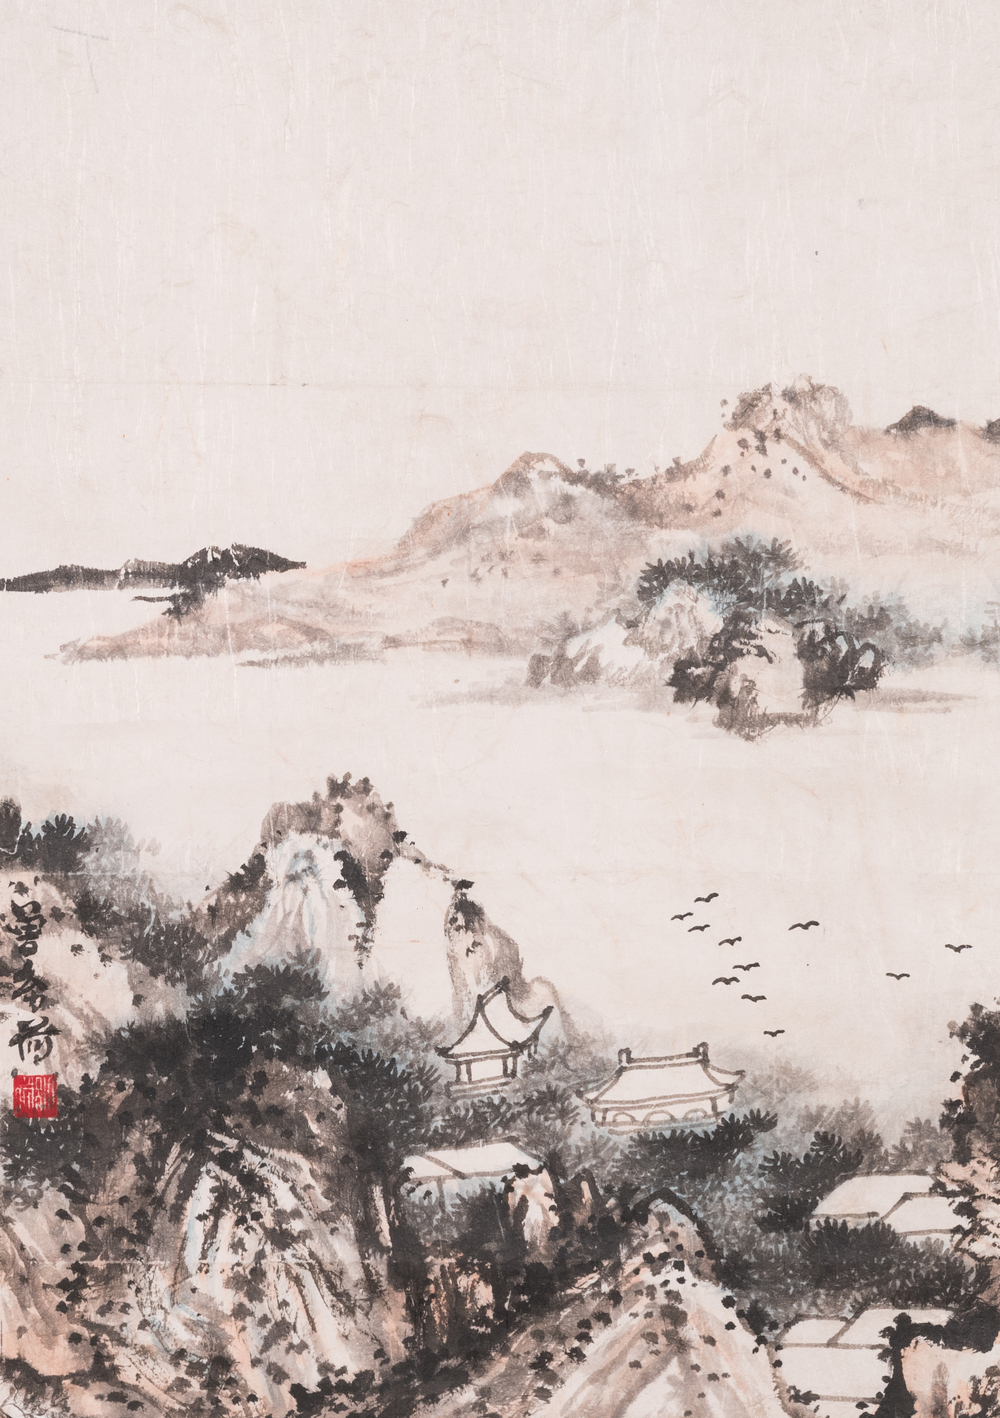 Zeng Youhe 曾幼荷 (1925-2017) : 'Paysage', encre et couleurs sur papier